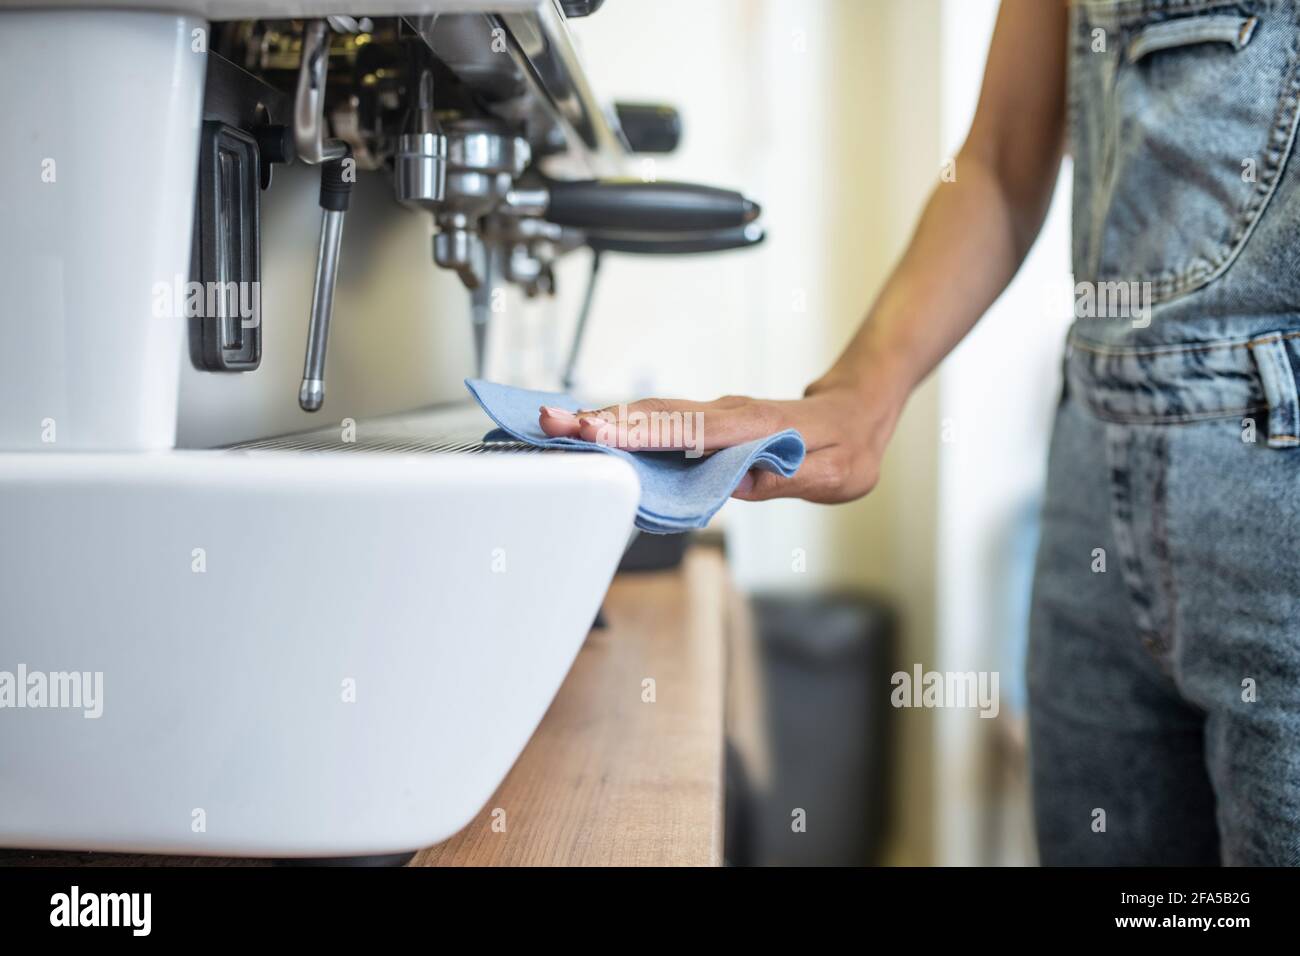 Femme main avec serviette coulissante sur la cafetière Banque D'Images